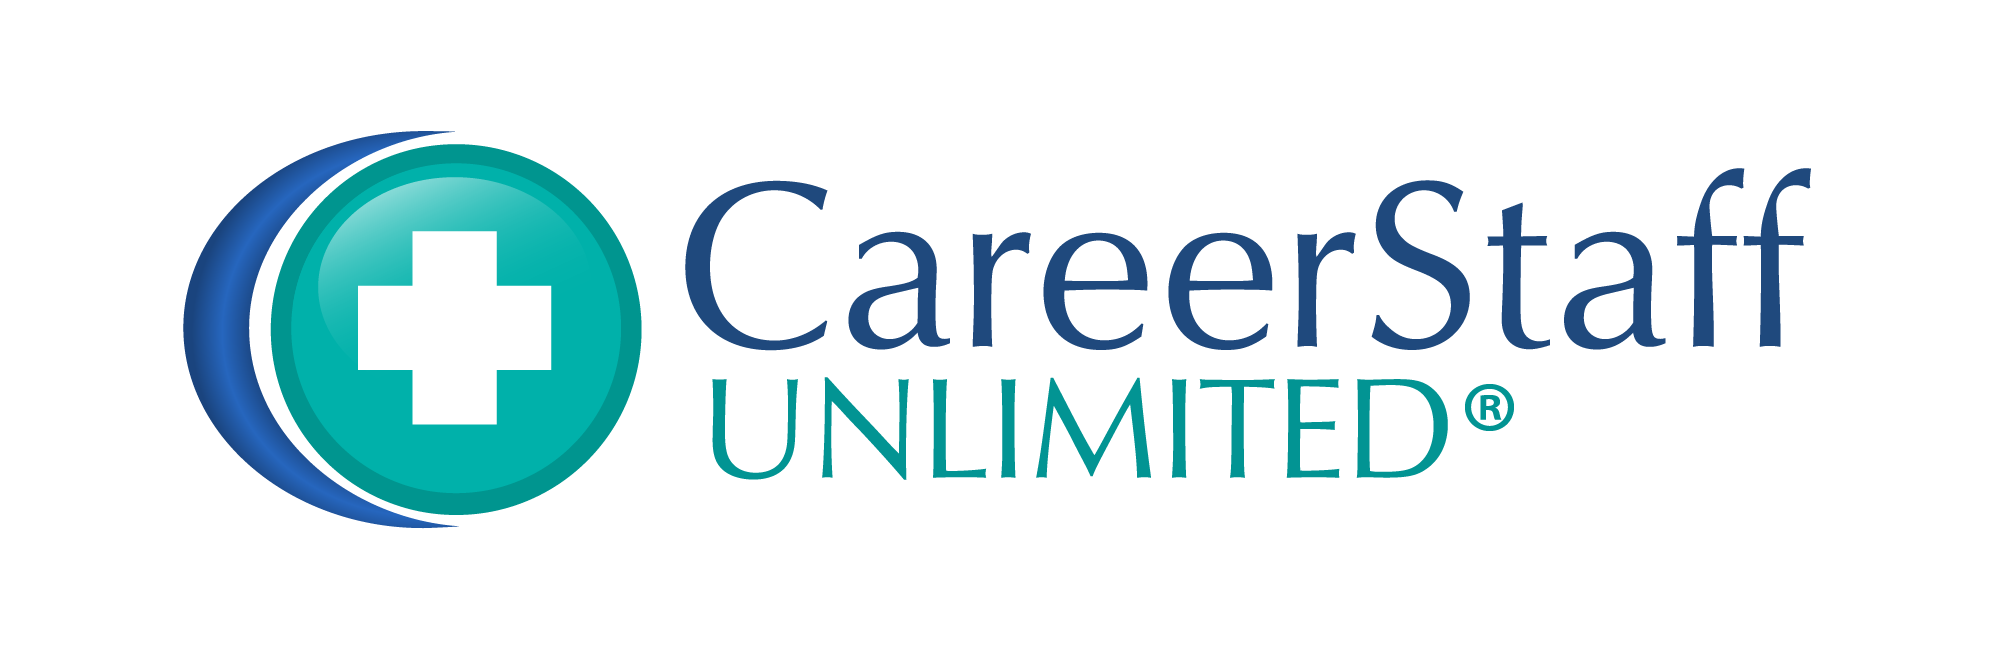 CareerStaff Unlimited Registered.png